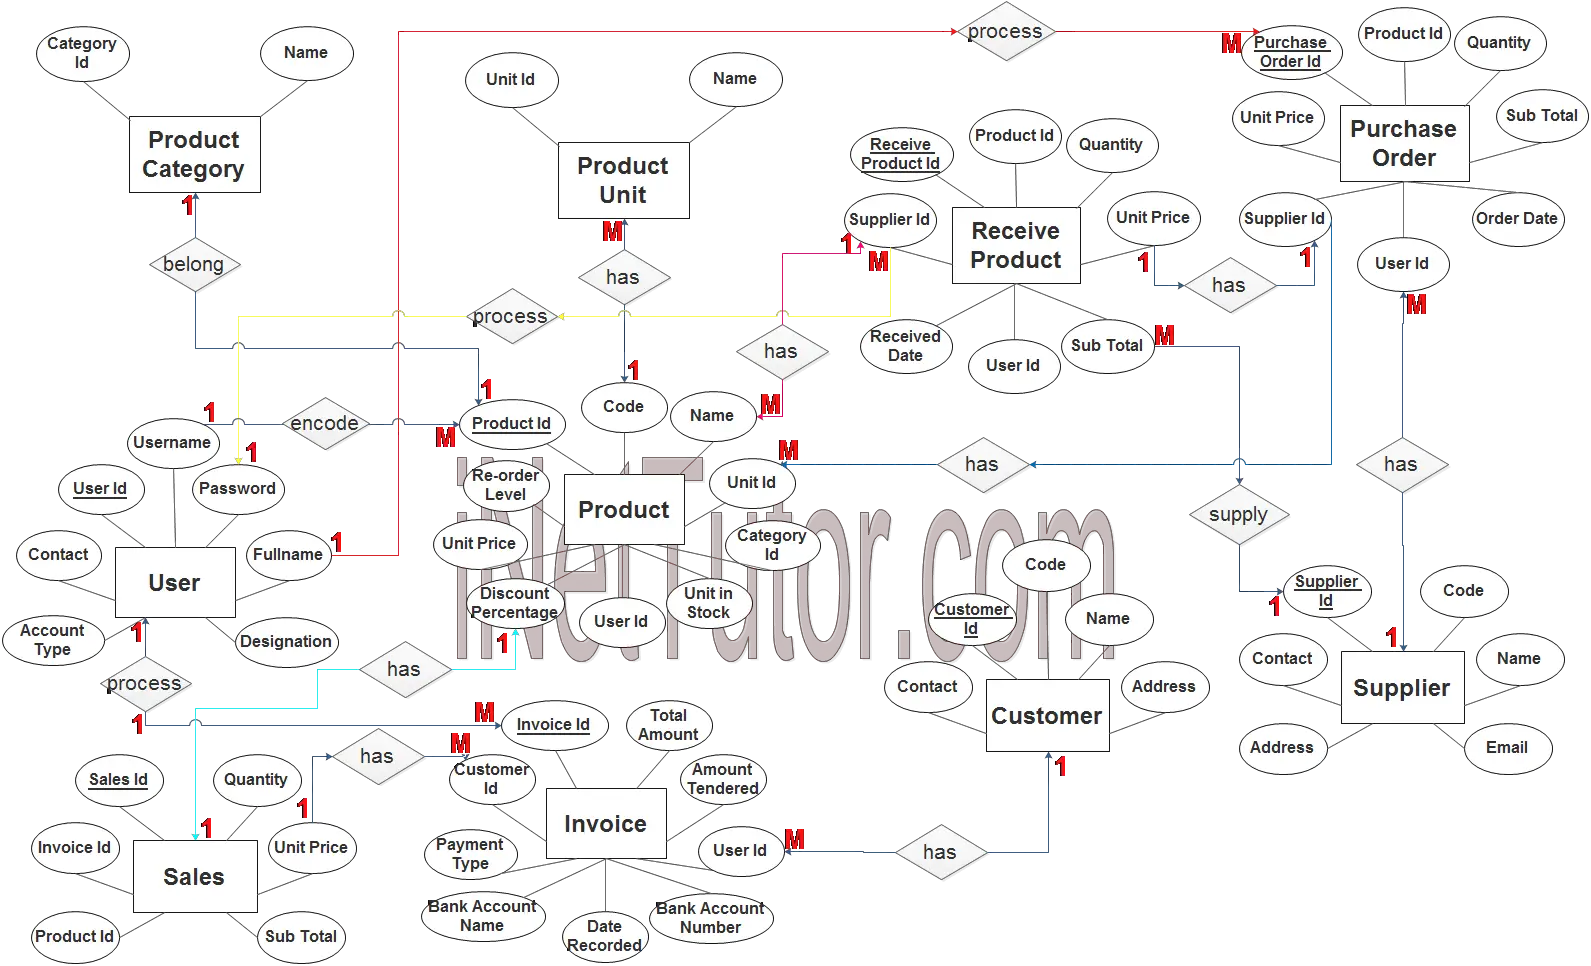 Point of Sale System ER Diagram - Step 3 Complete ERD